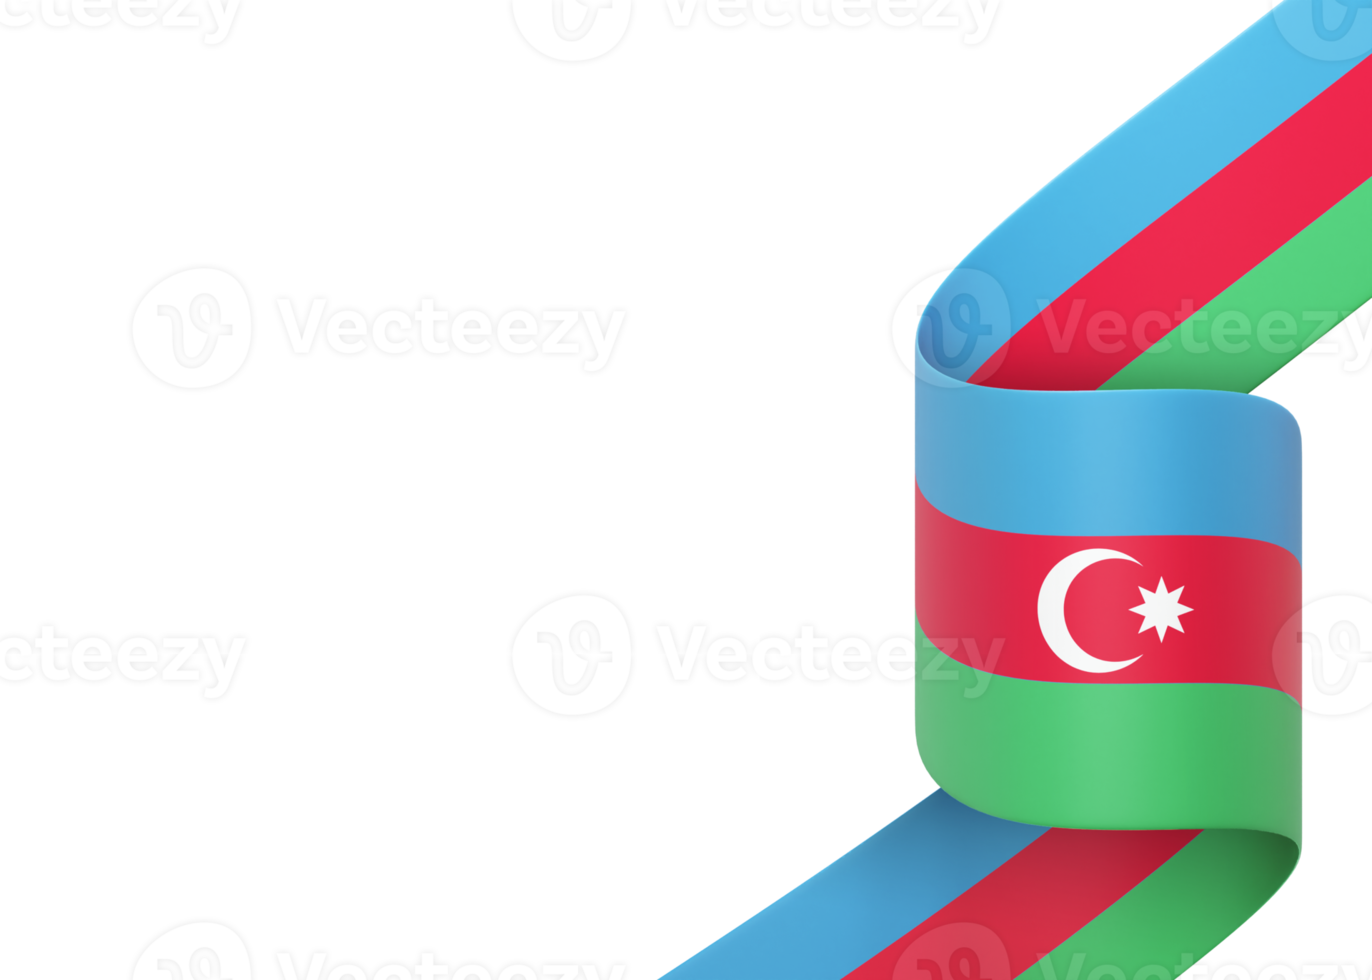 aserbaidschan flag design nationaler unabhängigkeitstag banner element transparenter hintergrund png